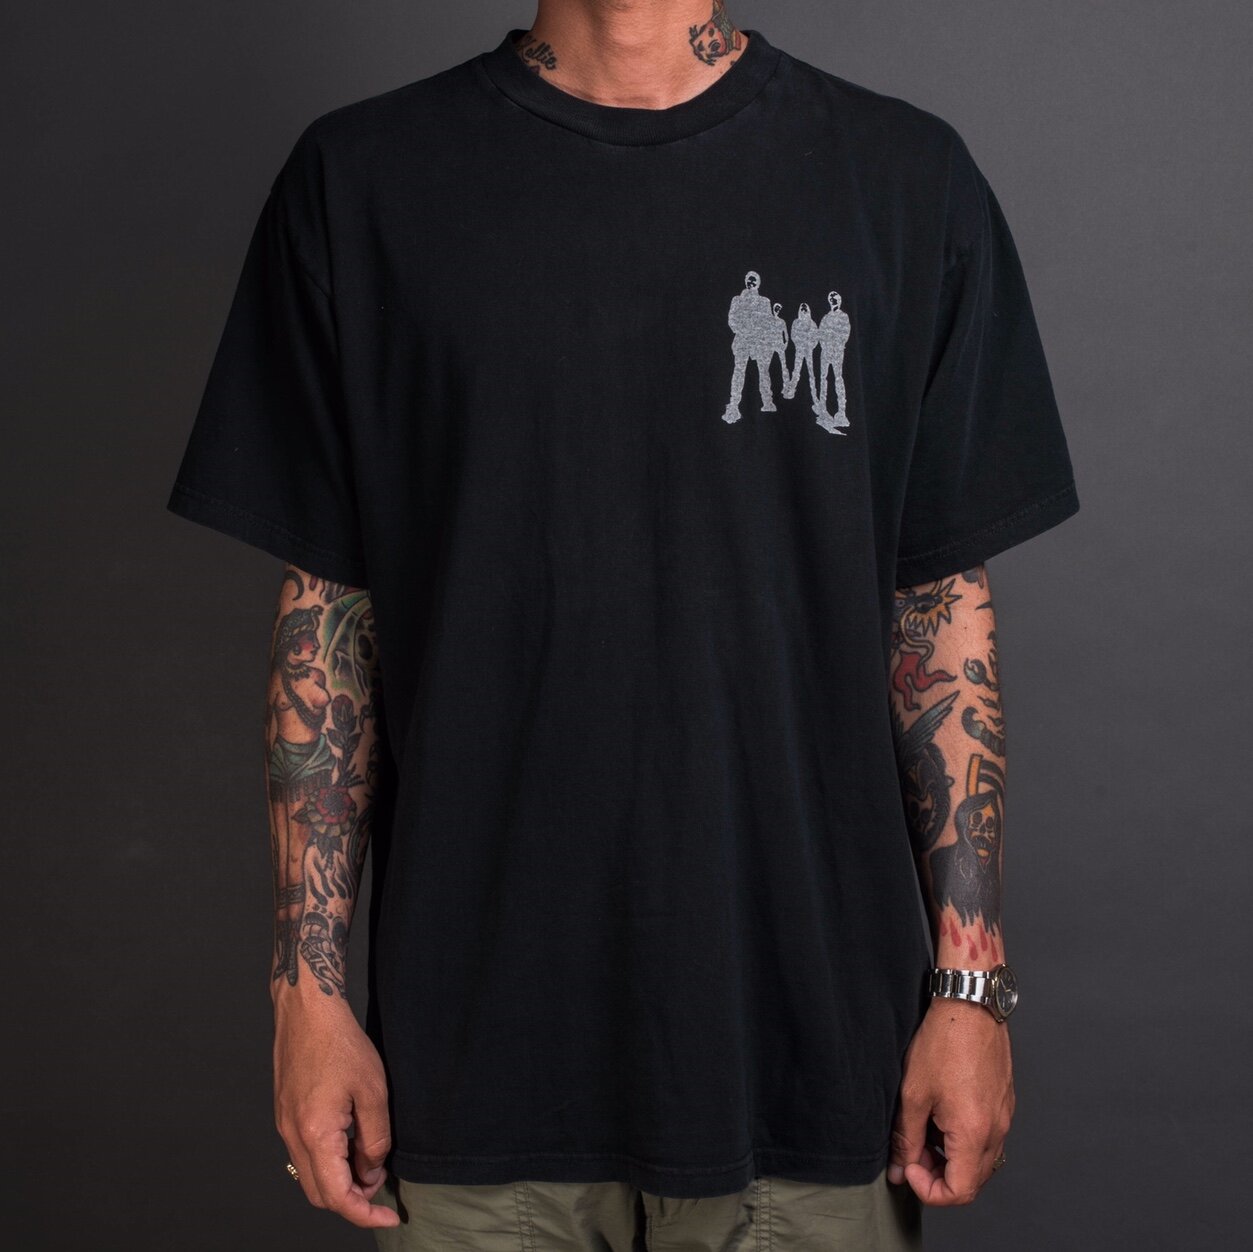 Vintage 90’s Soundgarden T-Shirt